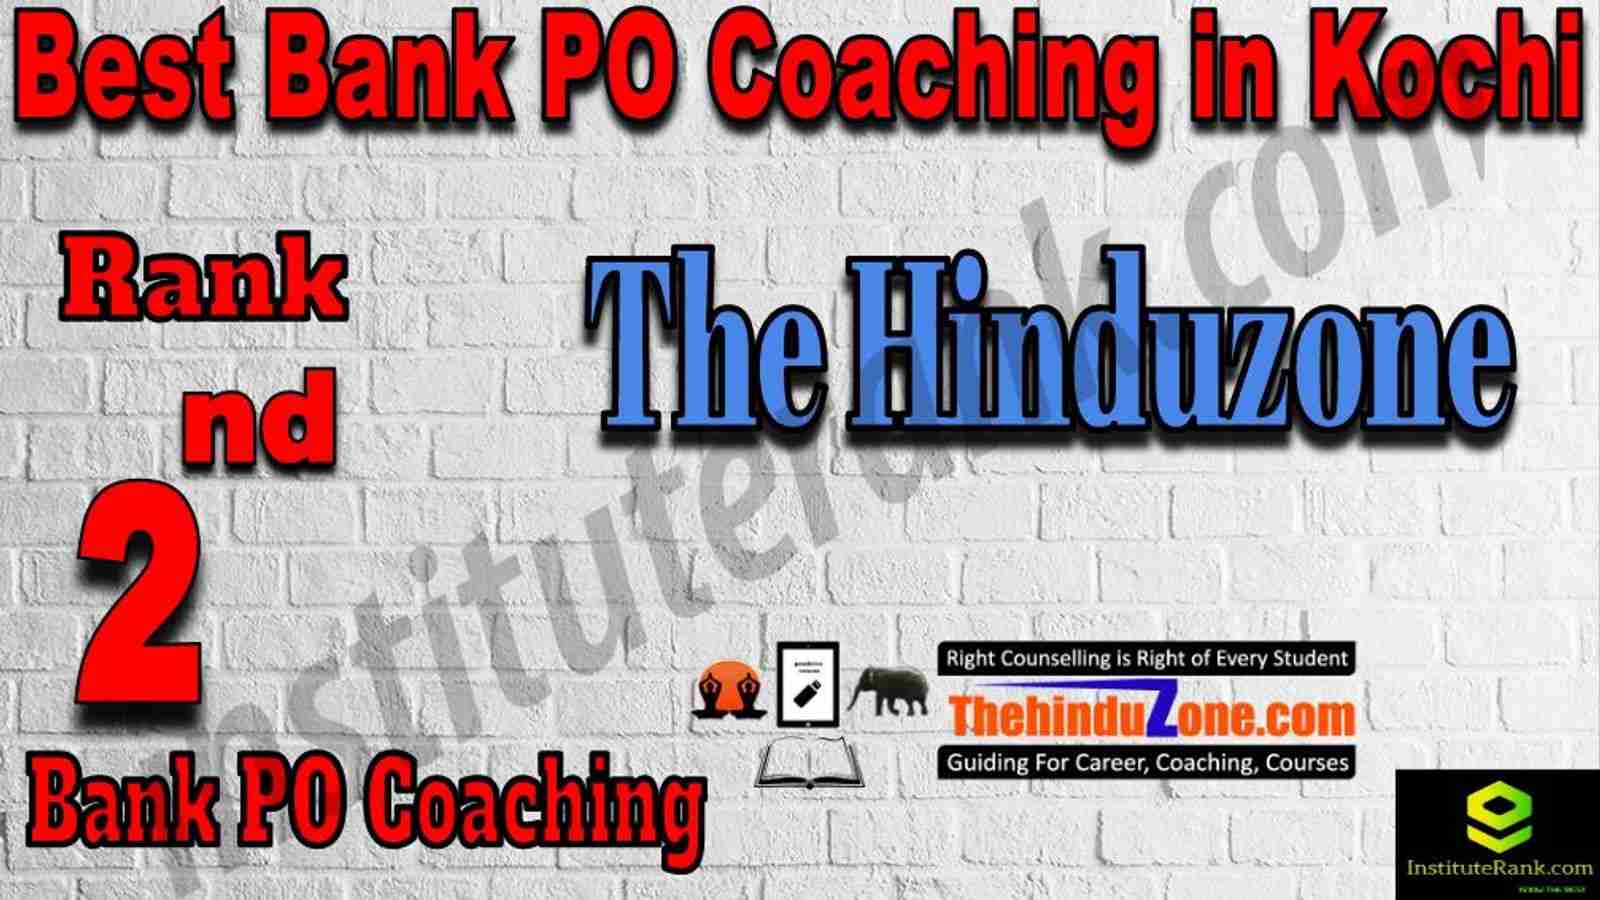 2nd Best Bank PO Coaching in Kochi